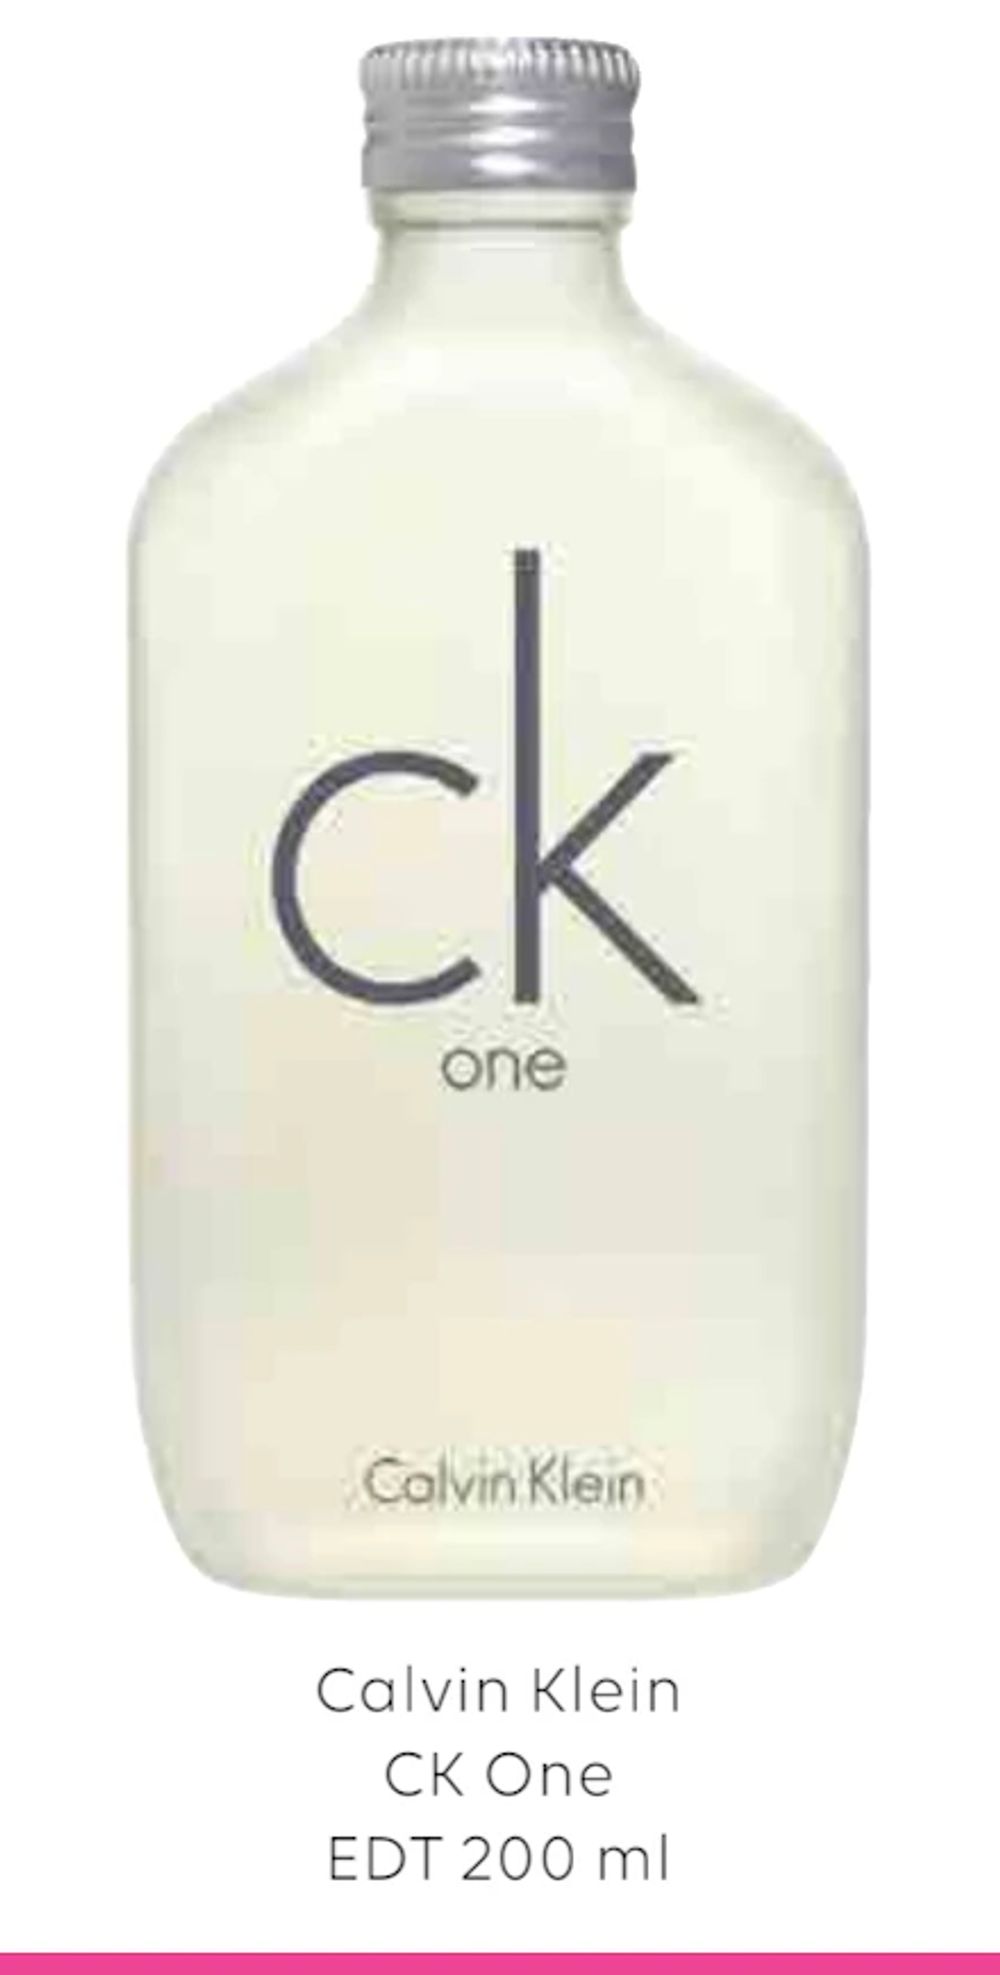 Tilbud på Calvin Klein CK One EDT 200 ml fra Scandlines Travel Shop til 299 kr.